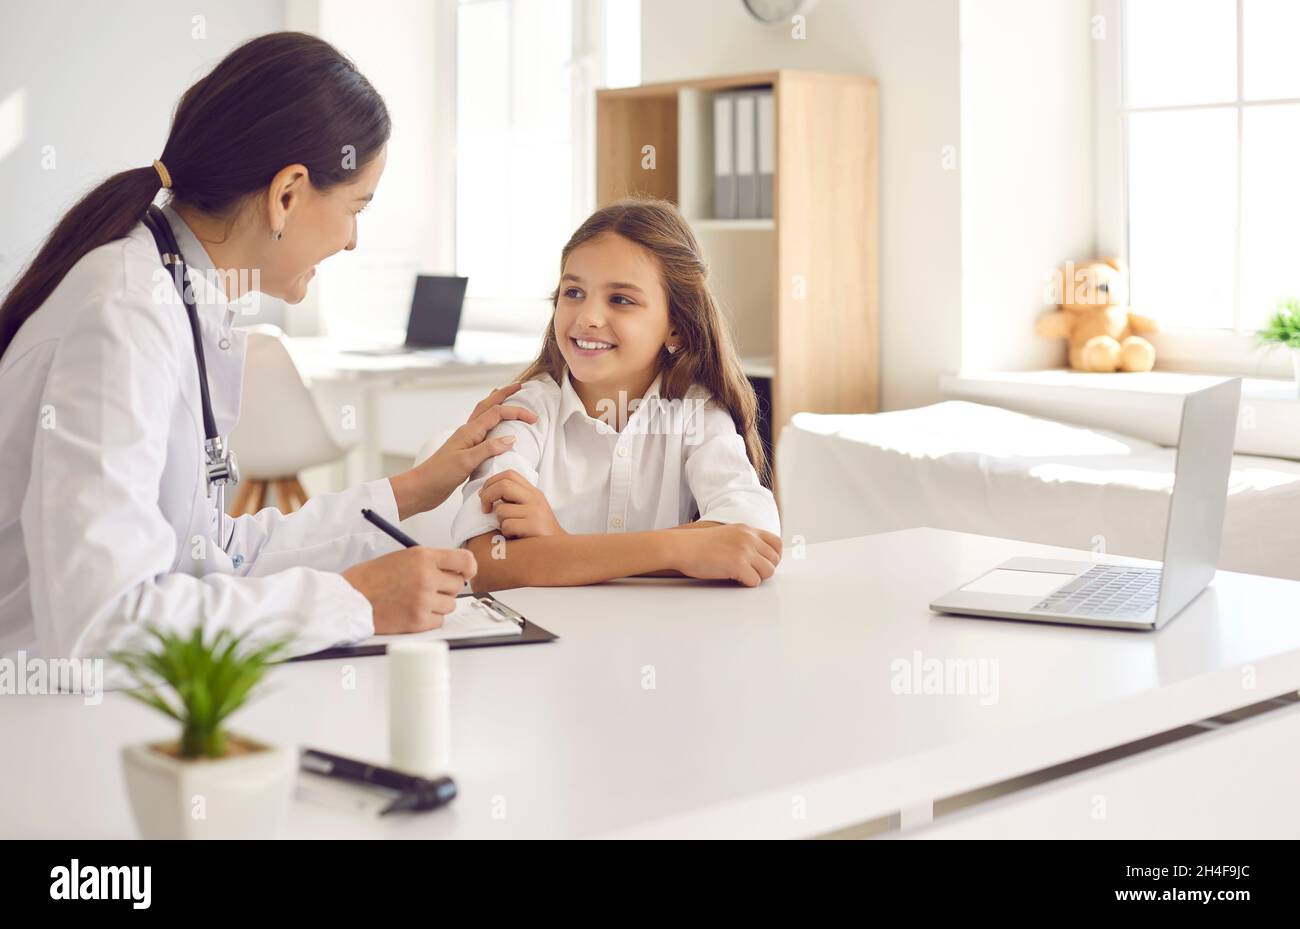 Freundliche und fürsorgliche Ärztin ermutigt kleine Mädchen vor einer ärztlichen Untersuchung. Stockfoto